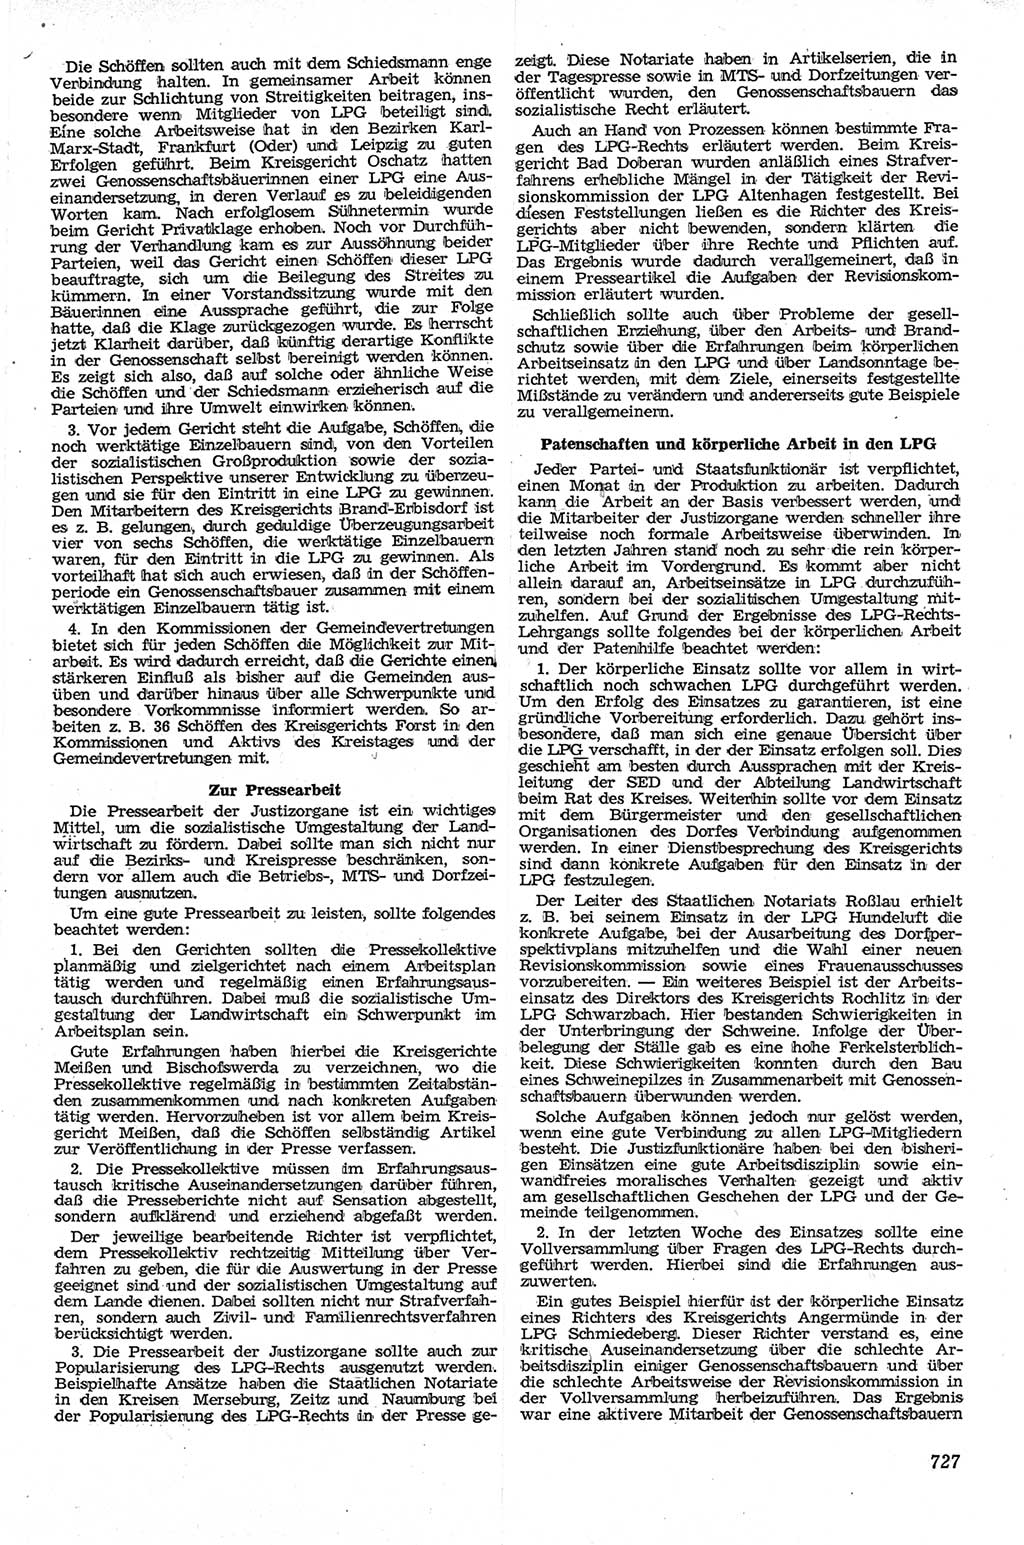 Neue Justiz (NJ), Zeitschrift für Recht und Rechtswissenschaft [Deutsche Demokratische Republik (DDR)], 13. Jahrgang 1959, Seite 727 (NJ DDR 1959, S. 727)